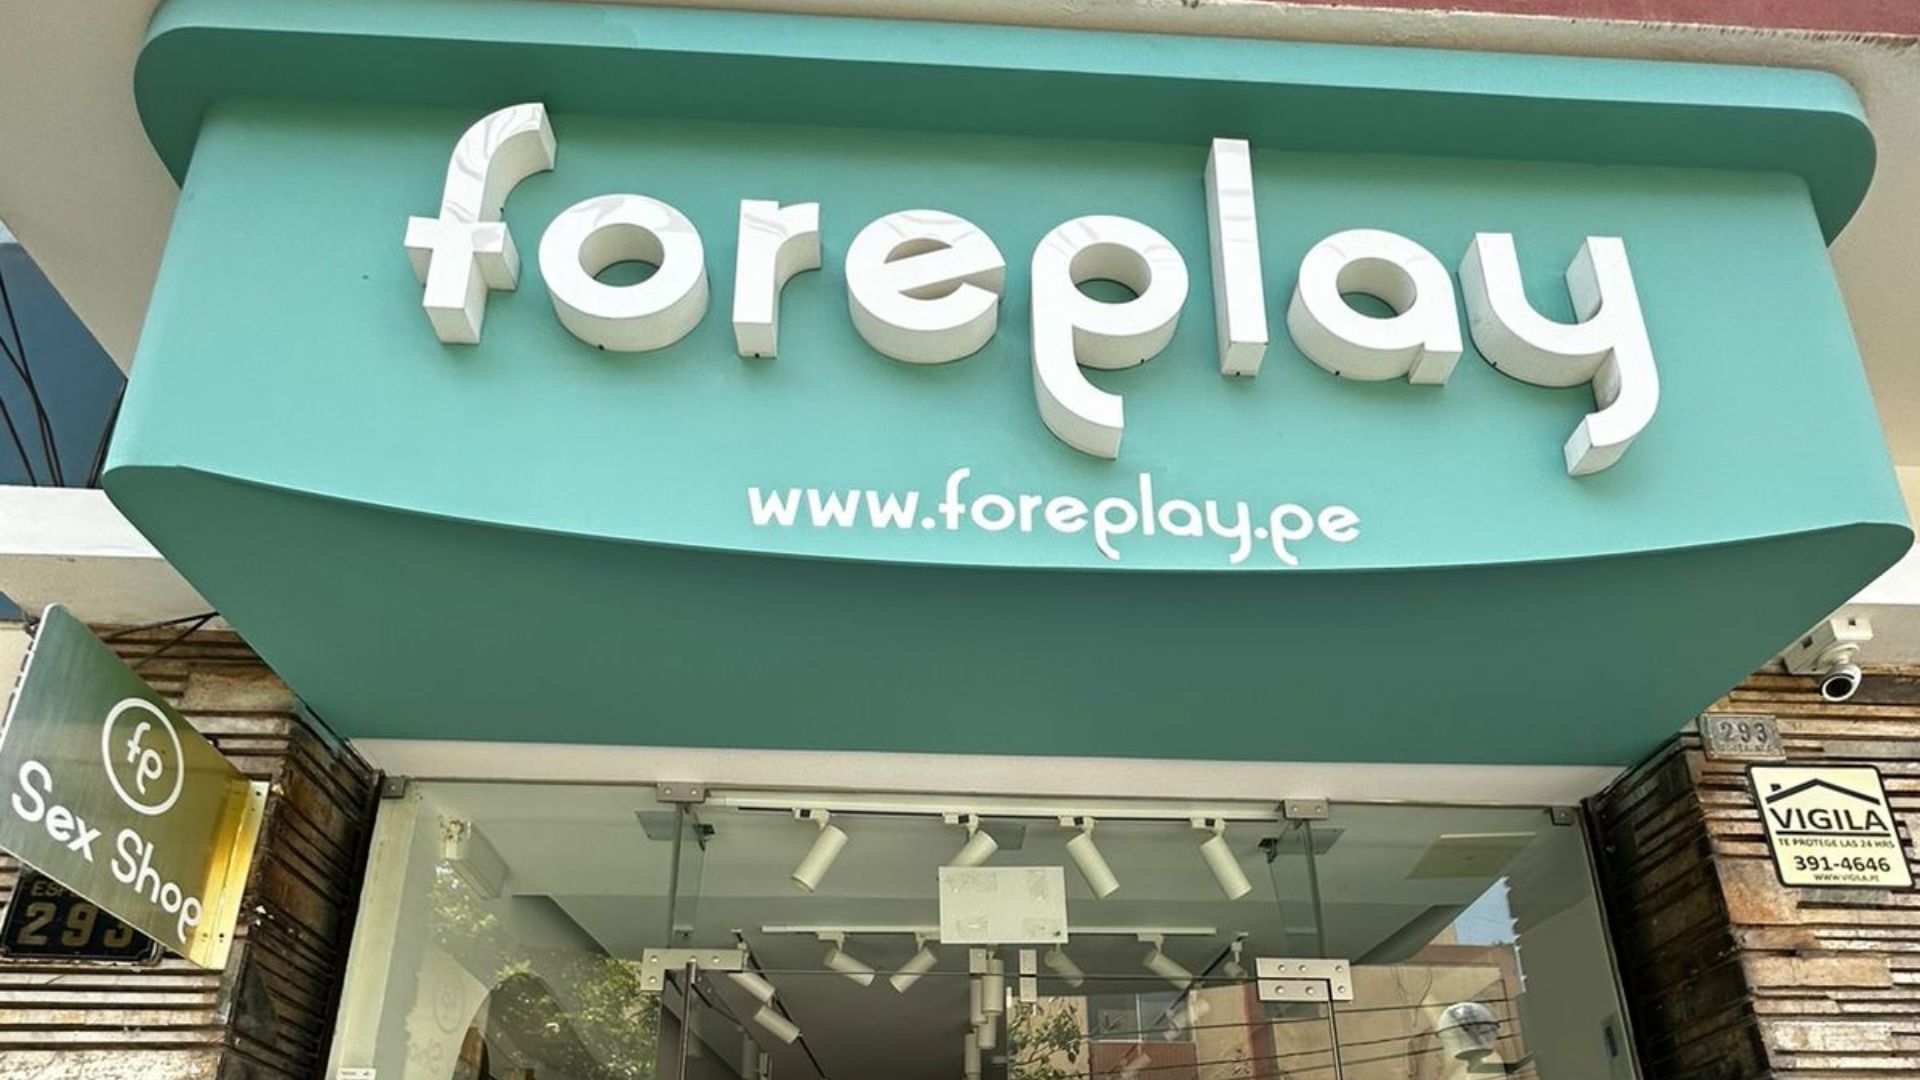 Tienda de juguetes sexuales Foreplay reclama por clausura de su local en Miraflores: “Ha sido un cierre injustificado”